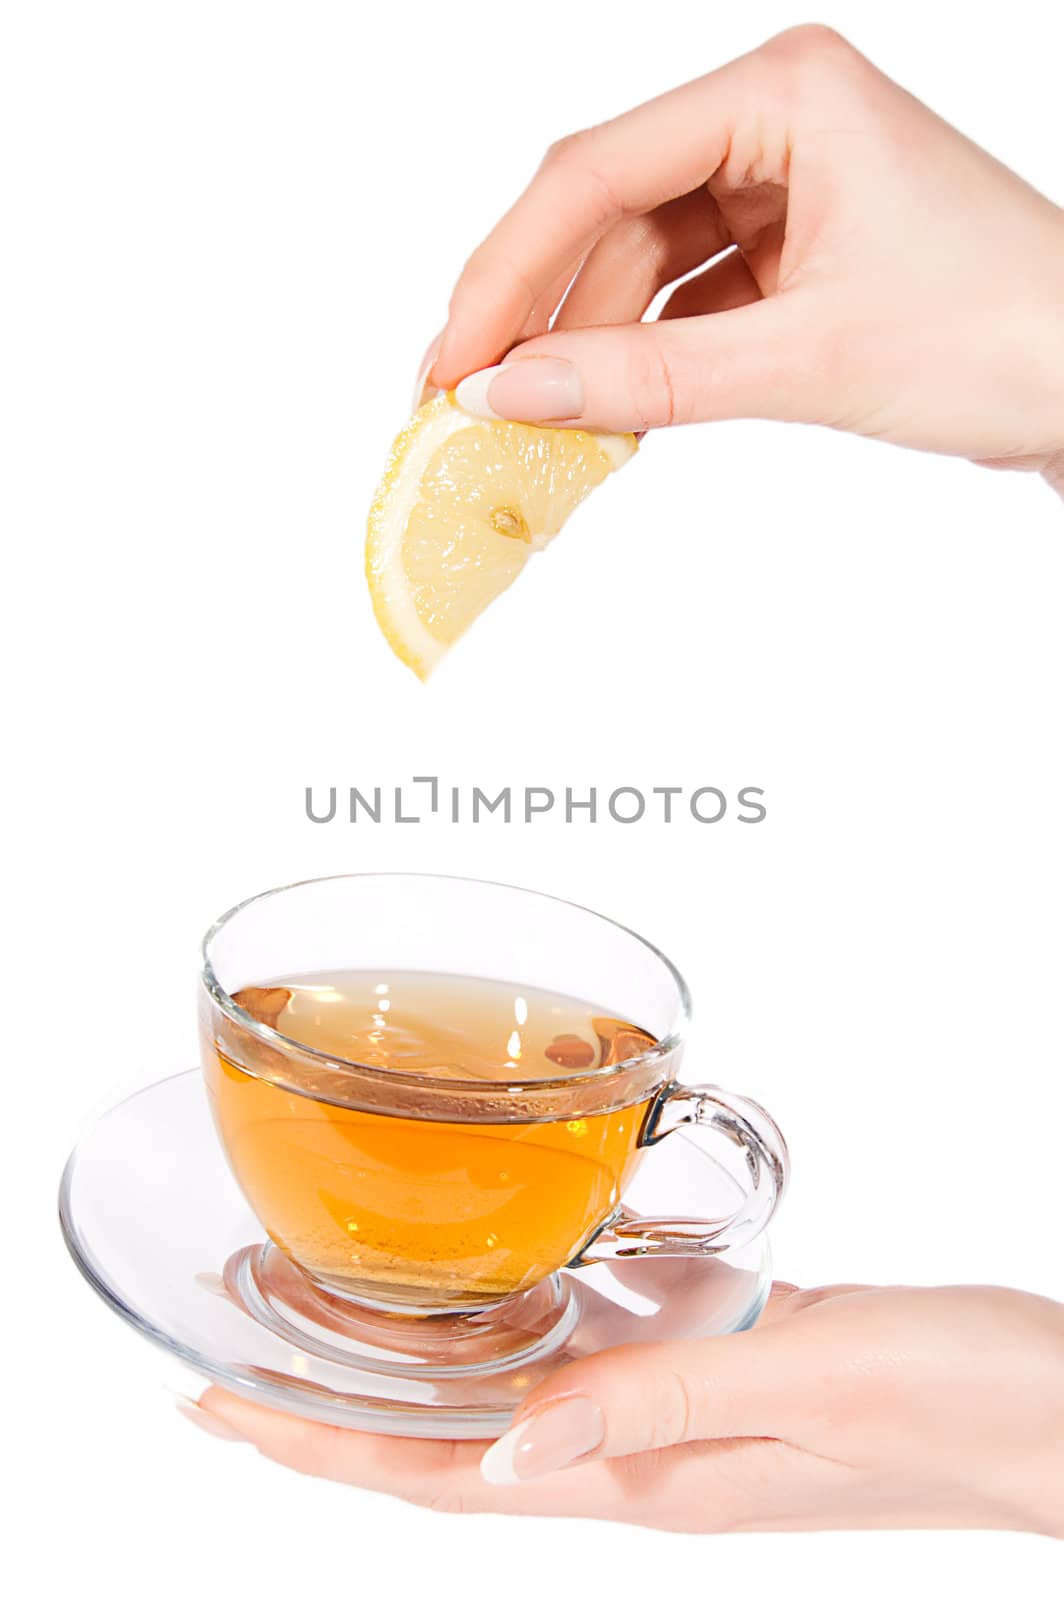 Woman hand adding lemon to tea over white